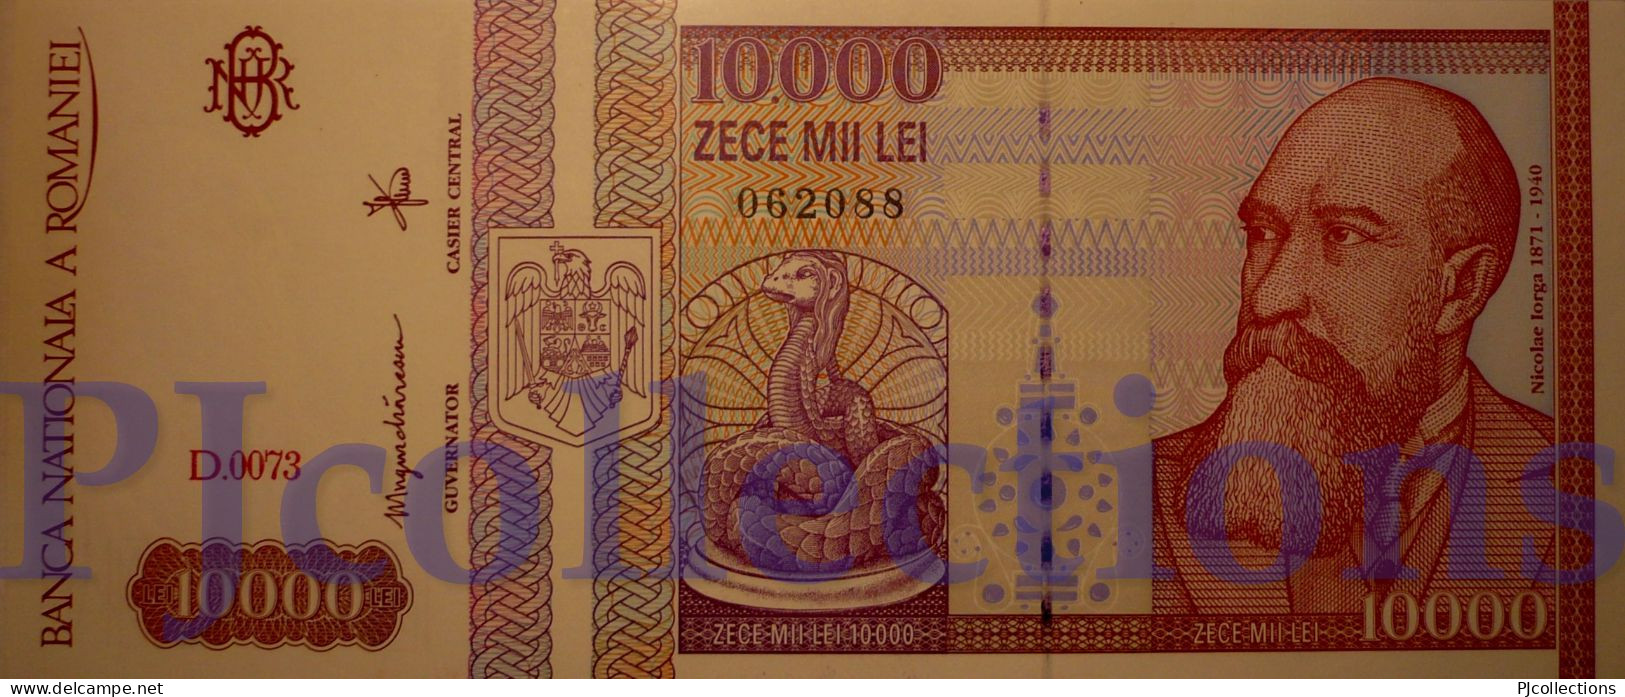 ROMANIA 10000 LEI 1994 PICK 105 UNC - Rumänien